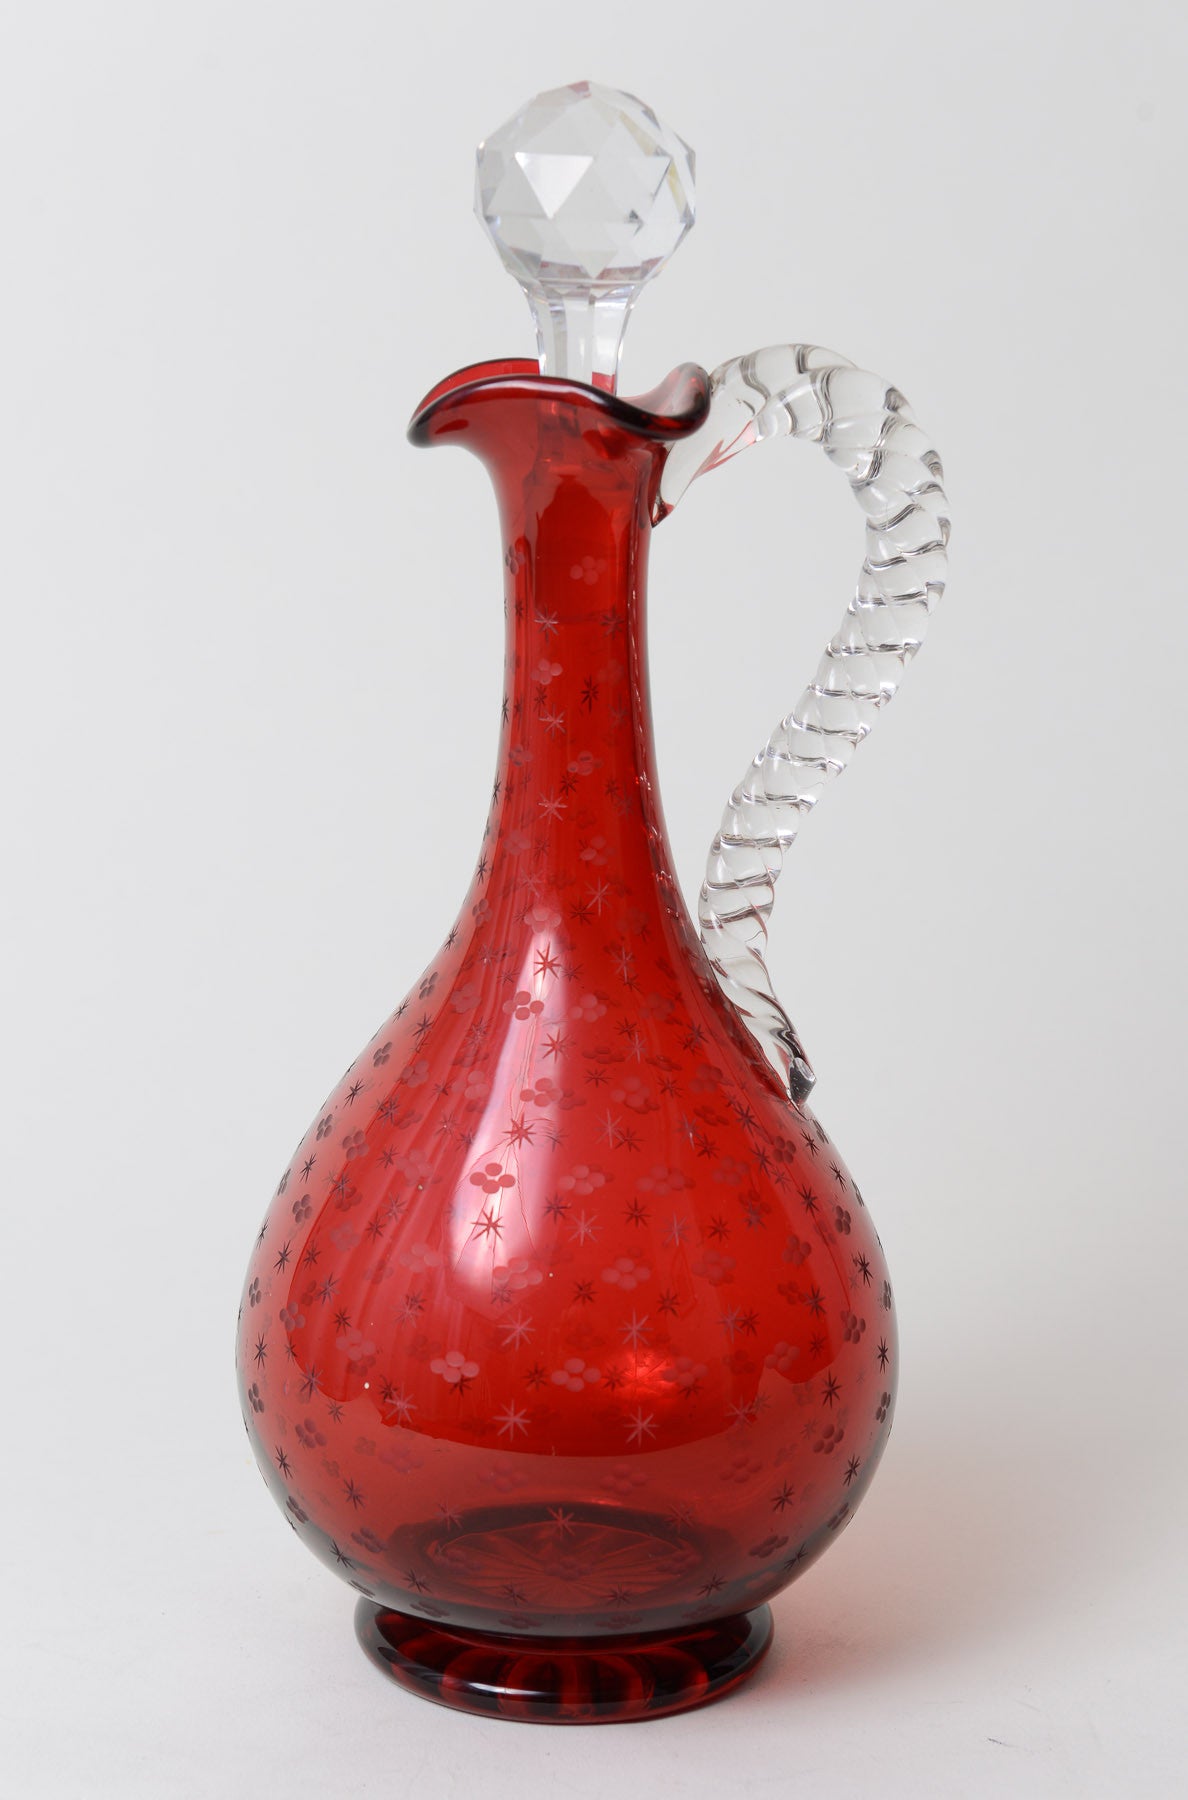 Victorian Antique Etched Cranberry Glass Decanter / Claret Jug c1860 (Code 0238) - Blue Cherry Antiques - 1